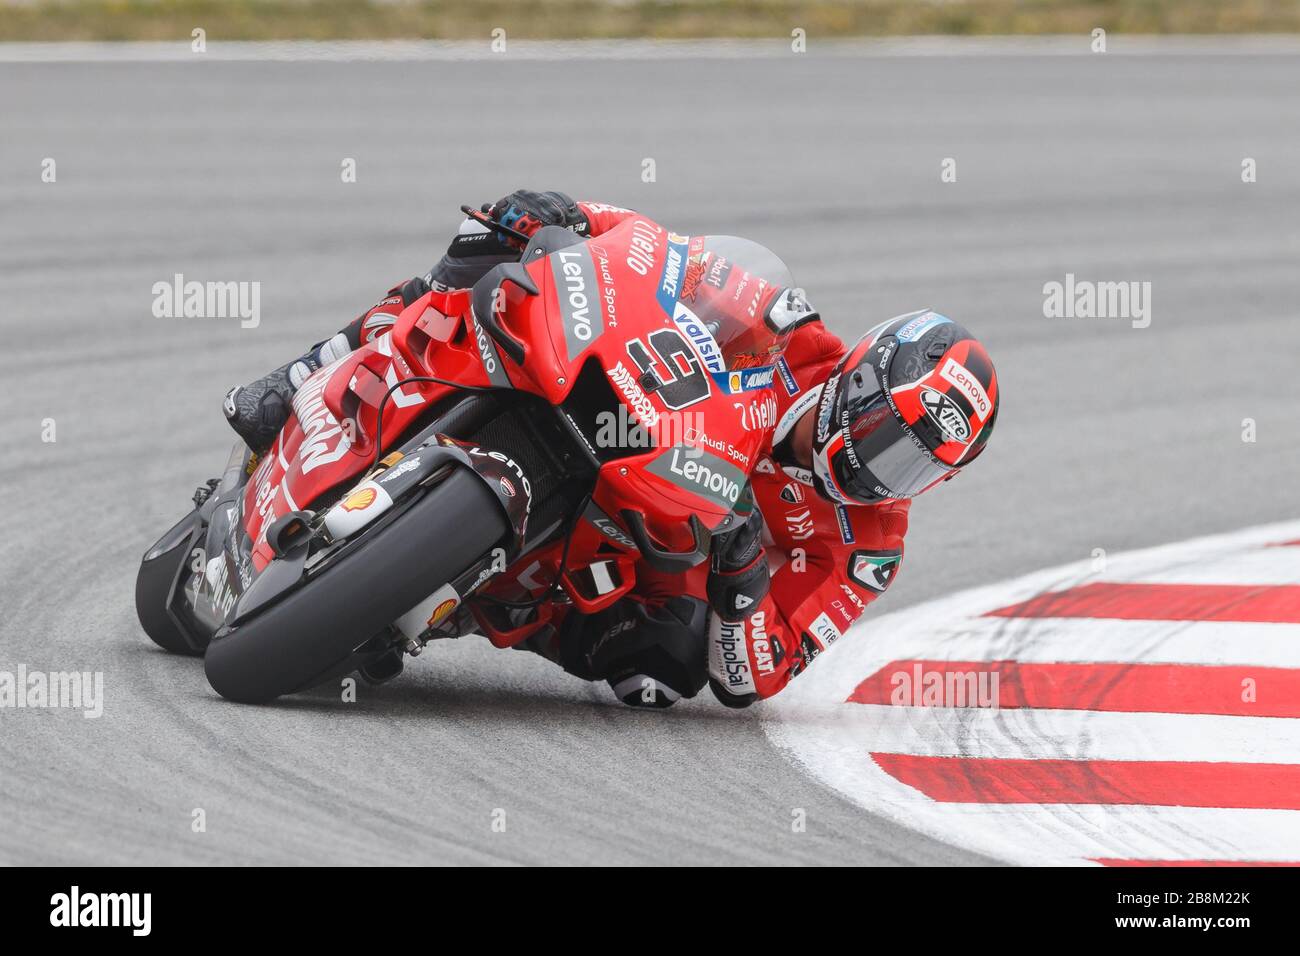 MONTMELO, SPANIEN - 14. JUNI: Danilo Petrucci von Mission winnow Ducati während der MotoGP von Free Practice auf dem Circuit de Catalunya am 14. Juni 2019 in Montme Stockfoto